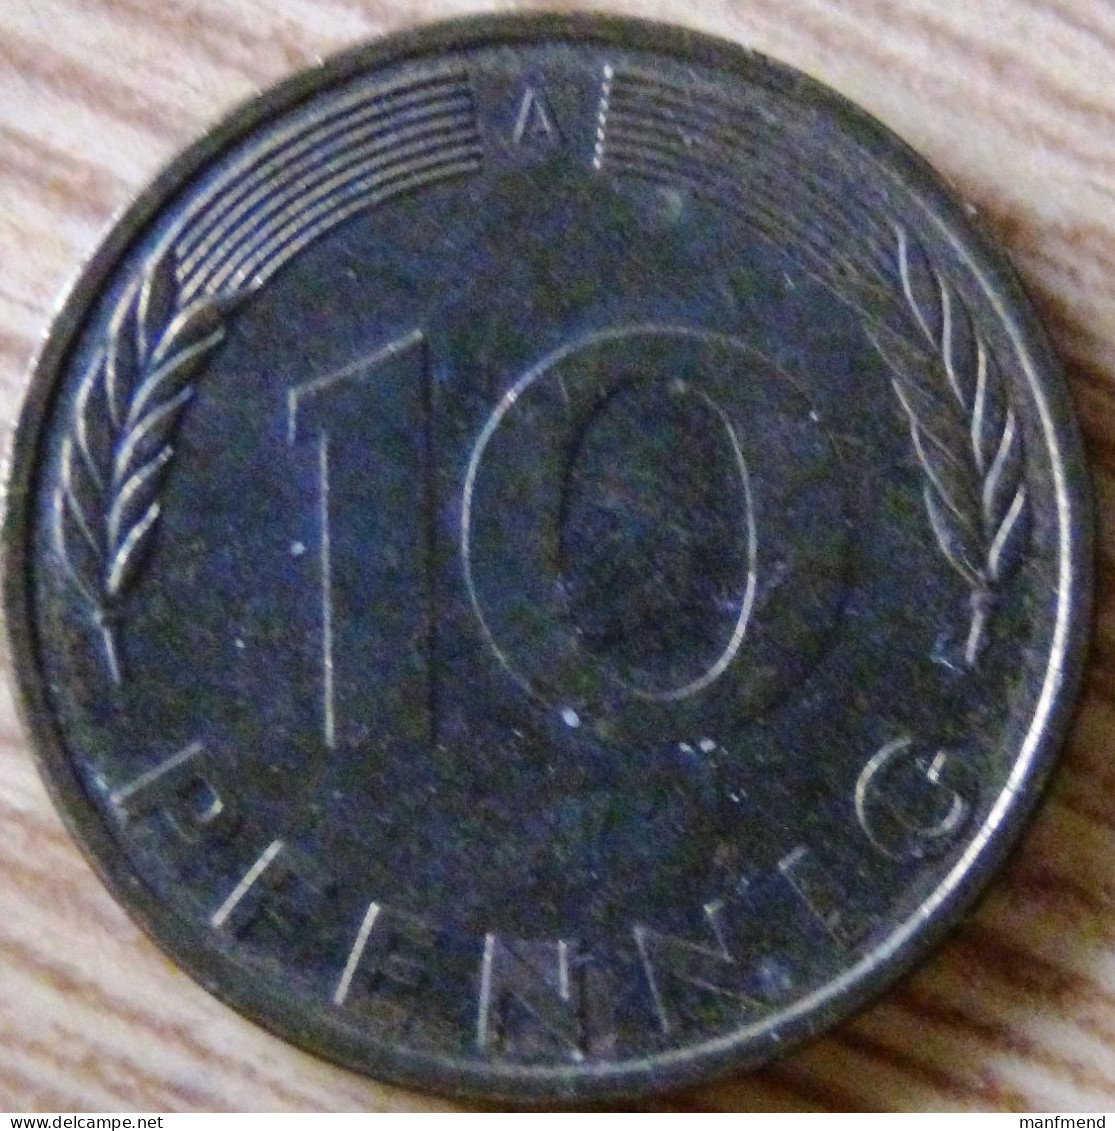 Germany - KM 108 - 1995- 10 Pfennig - Mintmark "A" - Berlin - VF - Look Scans - 10 Pfennig